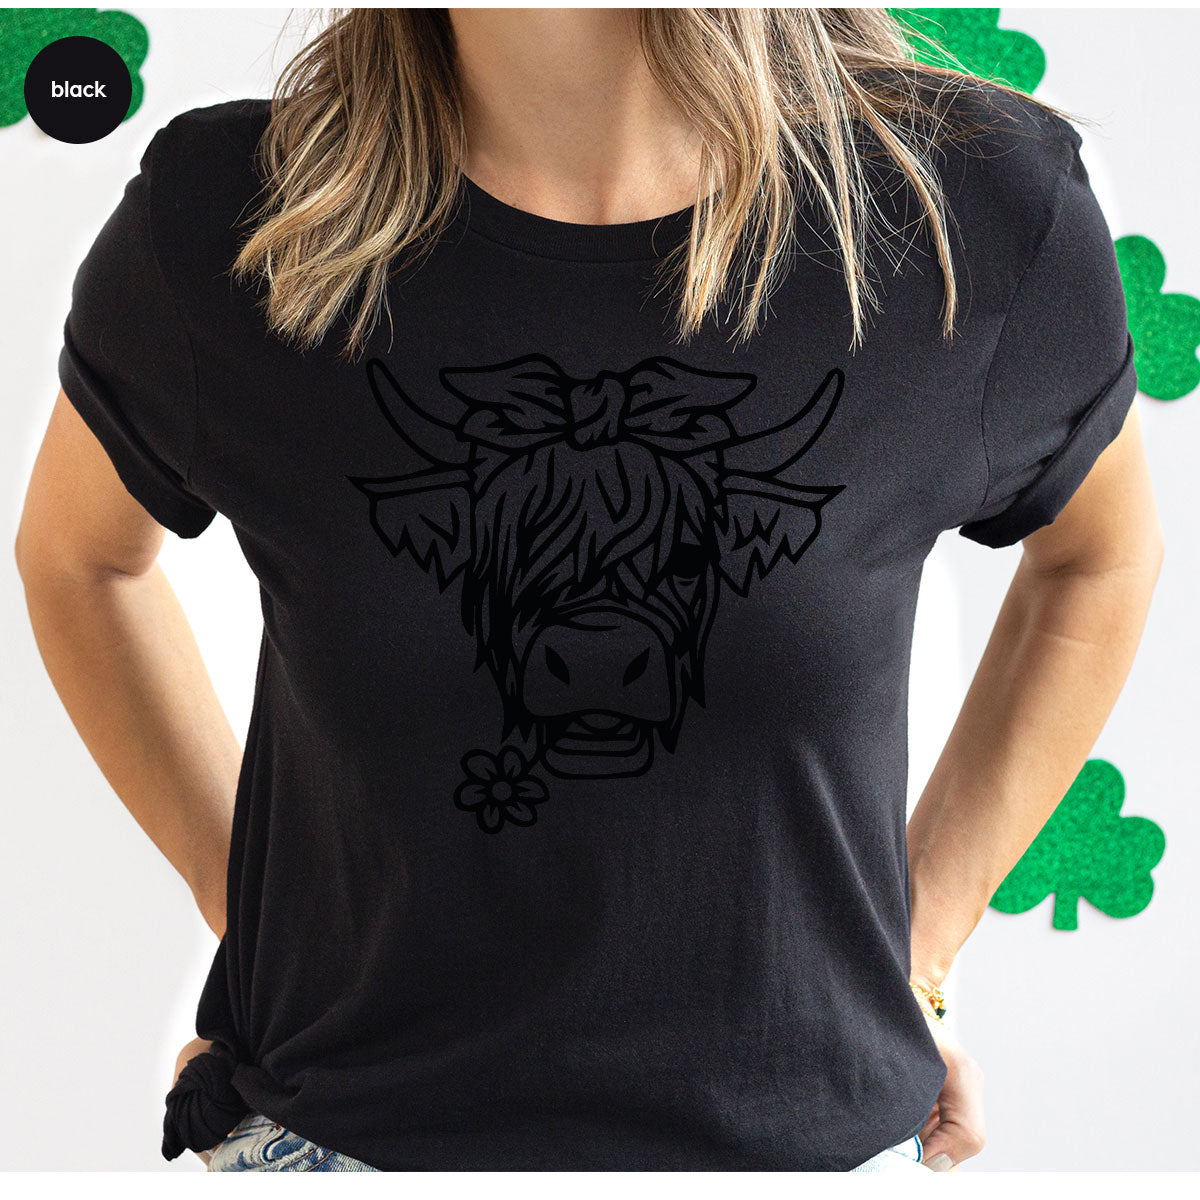 Cool Bull Shirt, Bull With Flower T-Shirt, Funny Bull T-Shirt